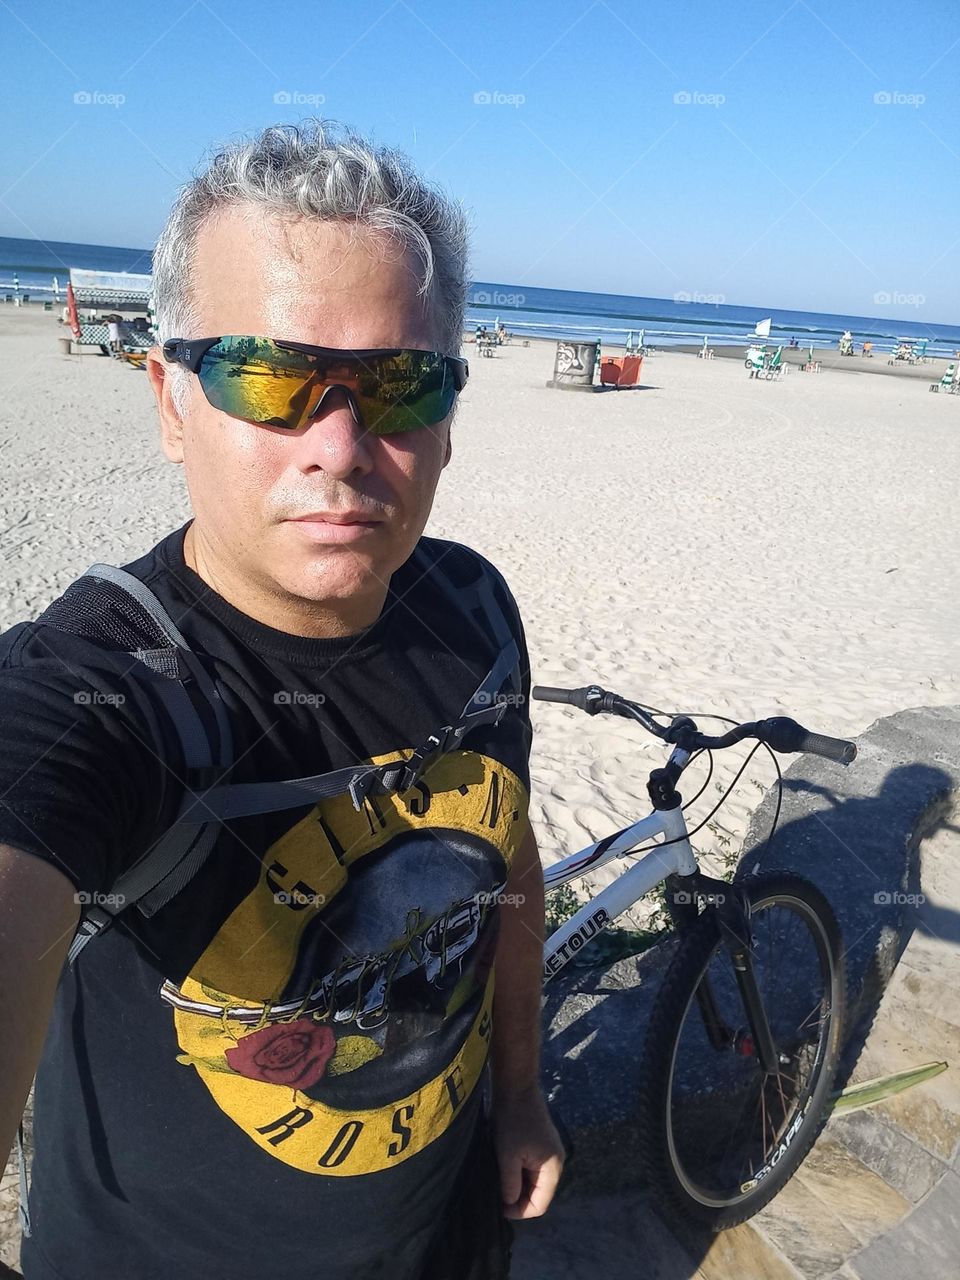 Bike, Beach and rock